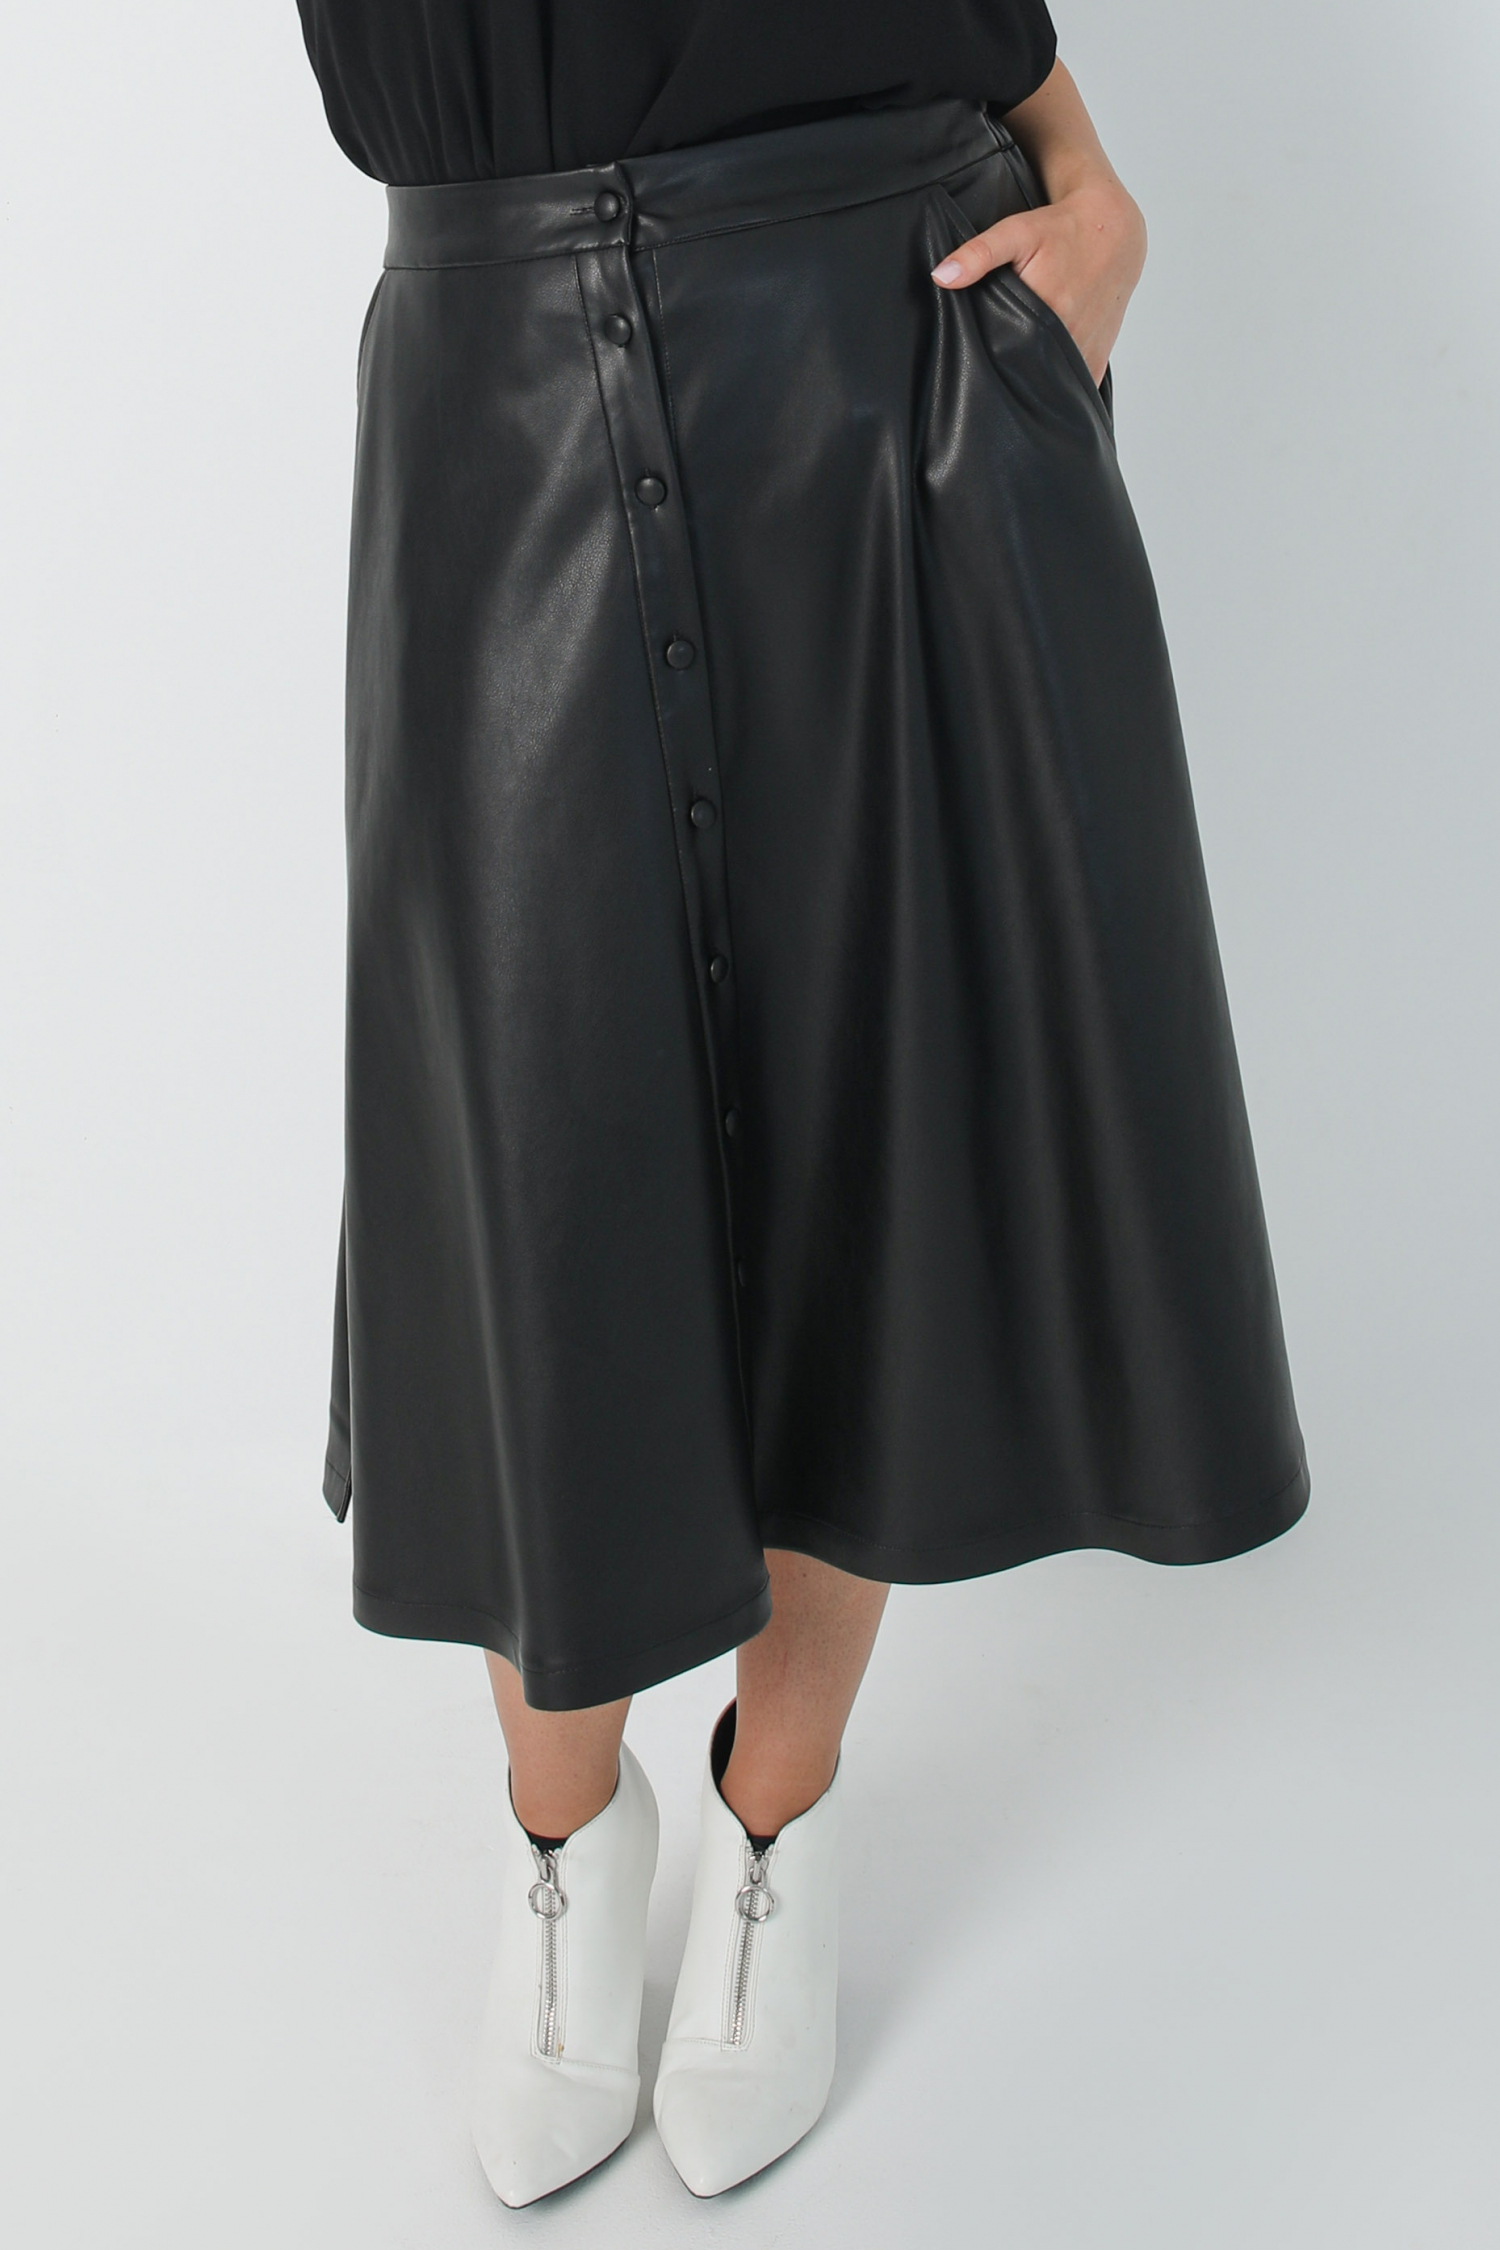 Flared vegan leather skirt (Shipping September 10/15)